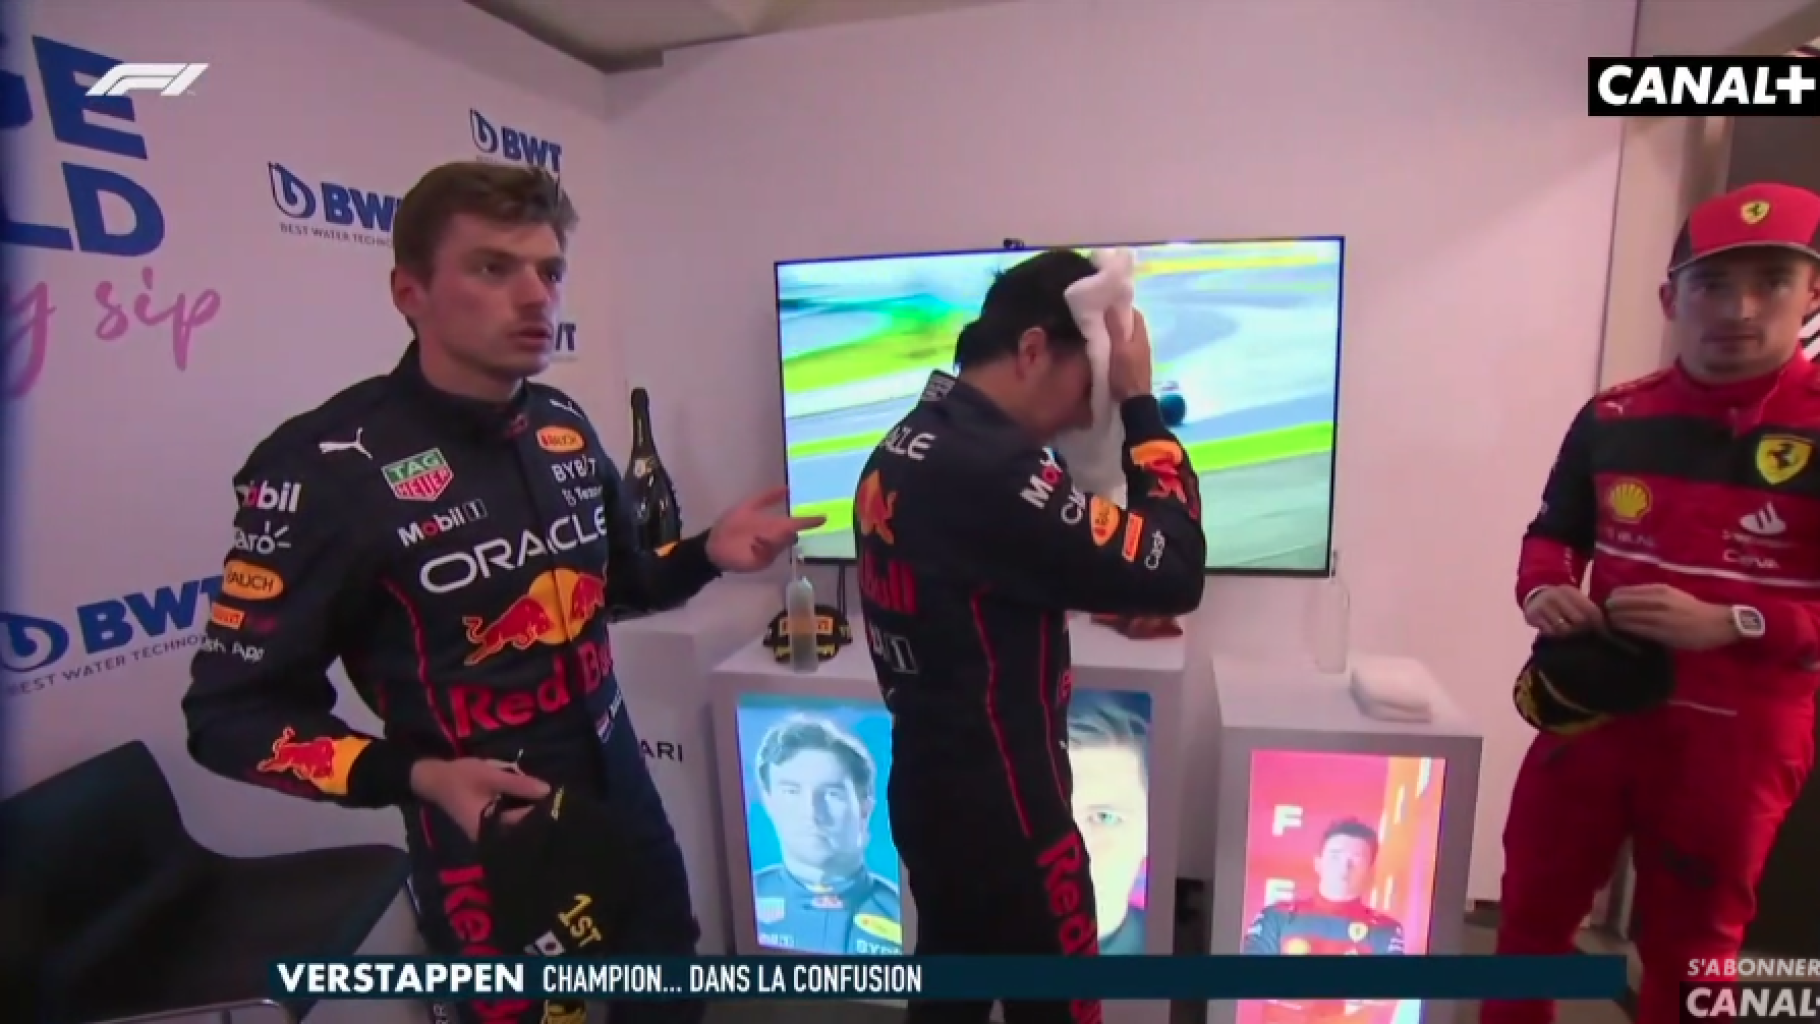 Verstappen declarado campeón mundial de F1 en un momento dudoso en Japón